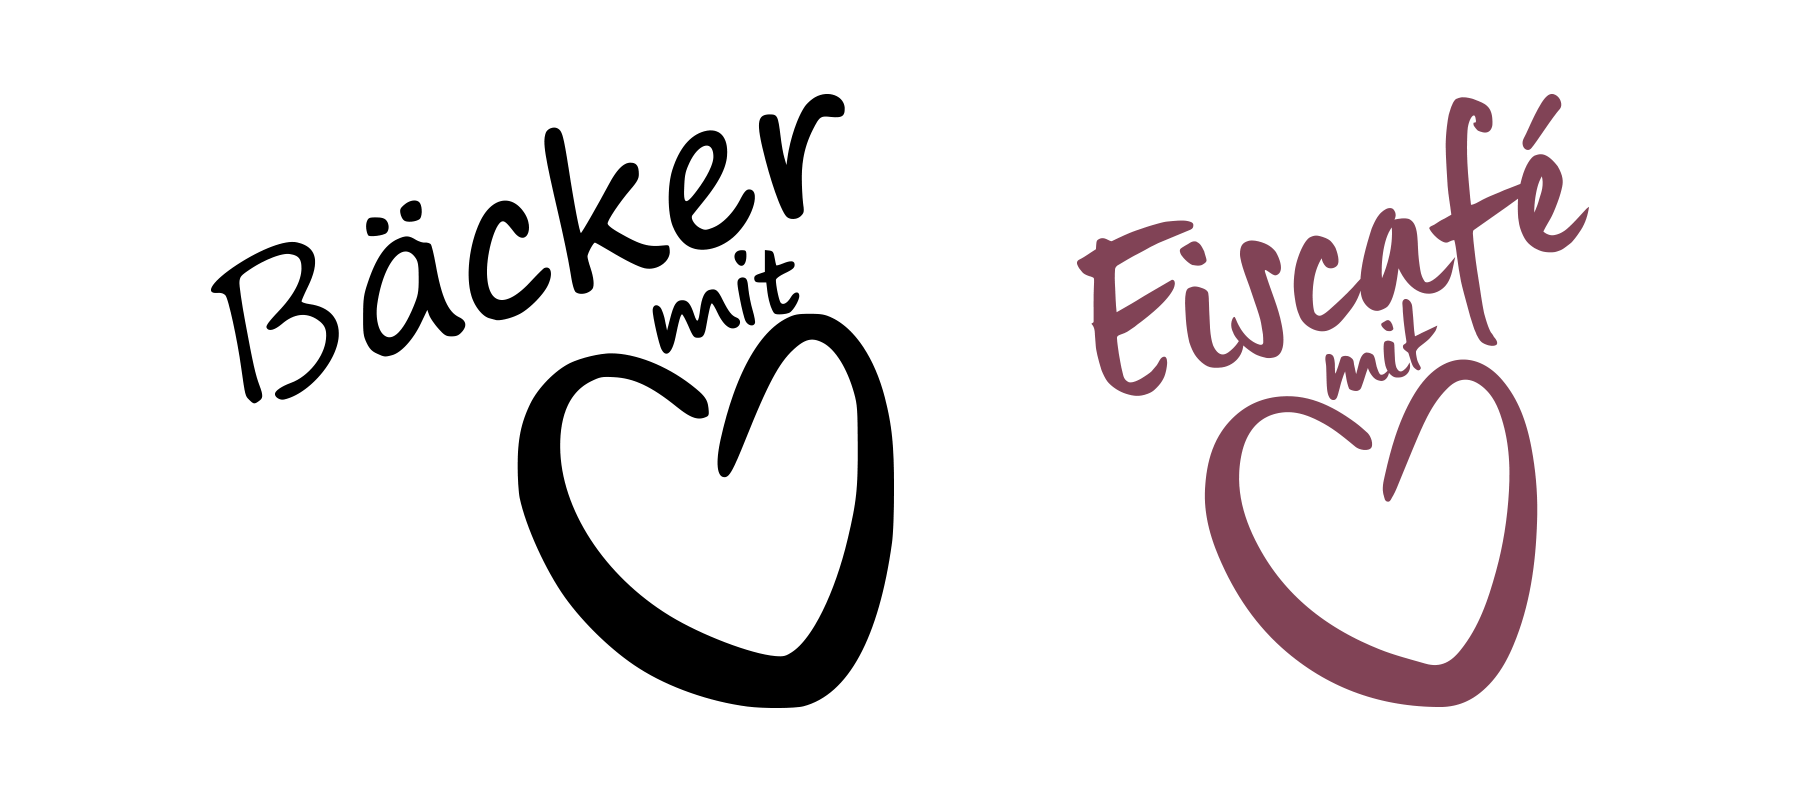 Baecker-EiscafeMitHerz_Logo